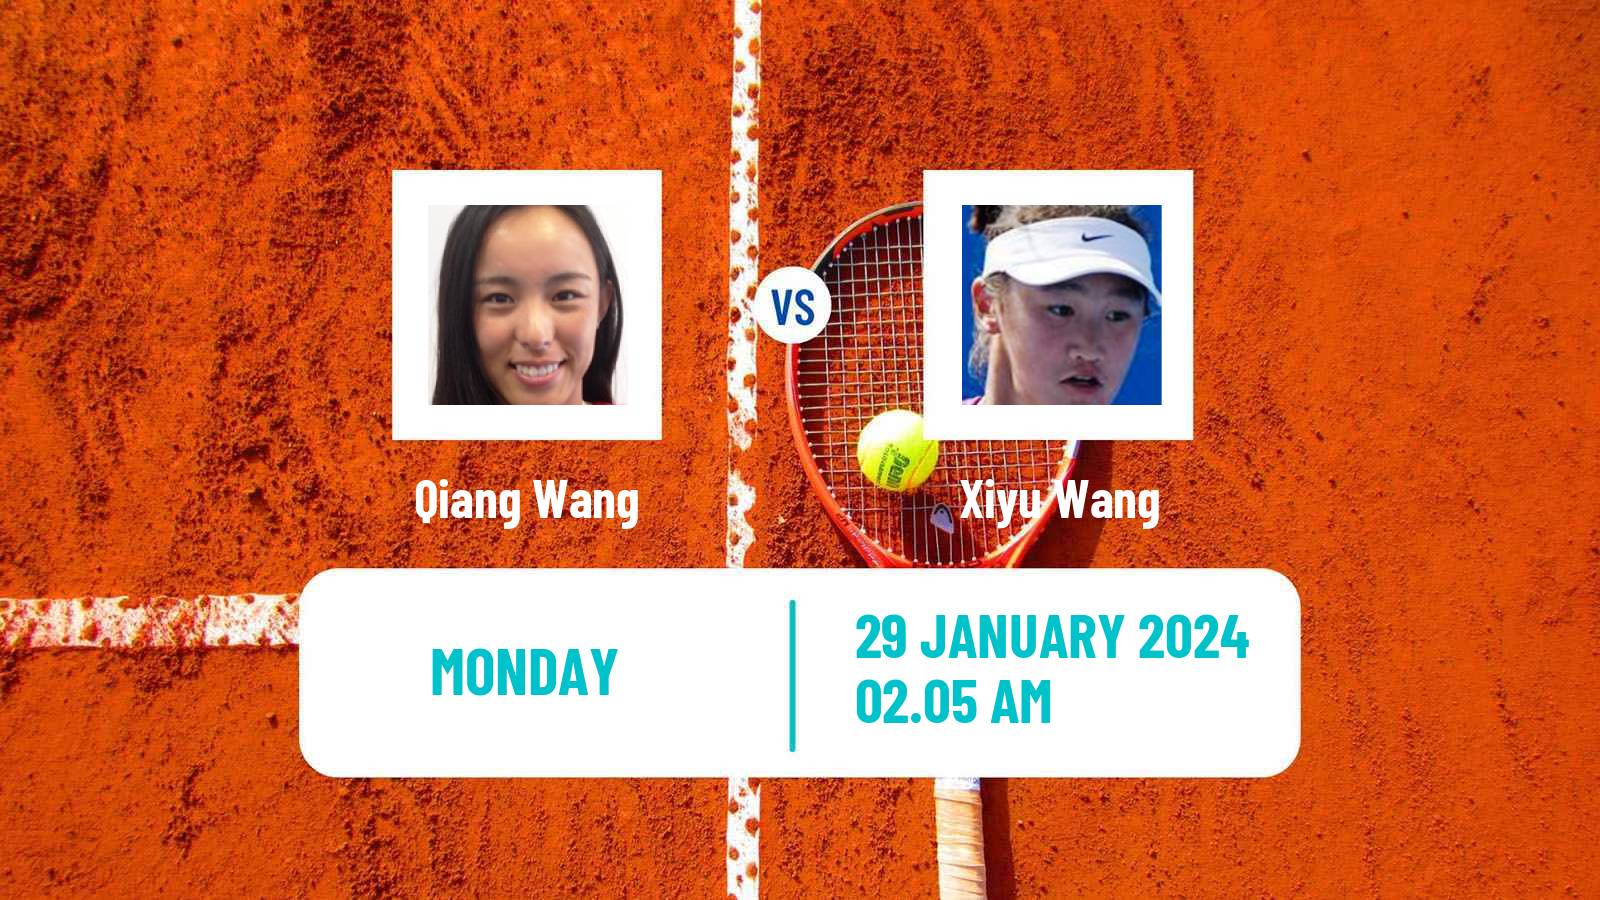 Tennis WTA Hua Hin Qiang Wang - Xiyu Wang